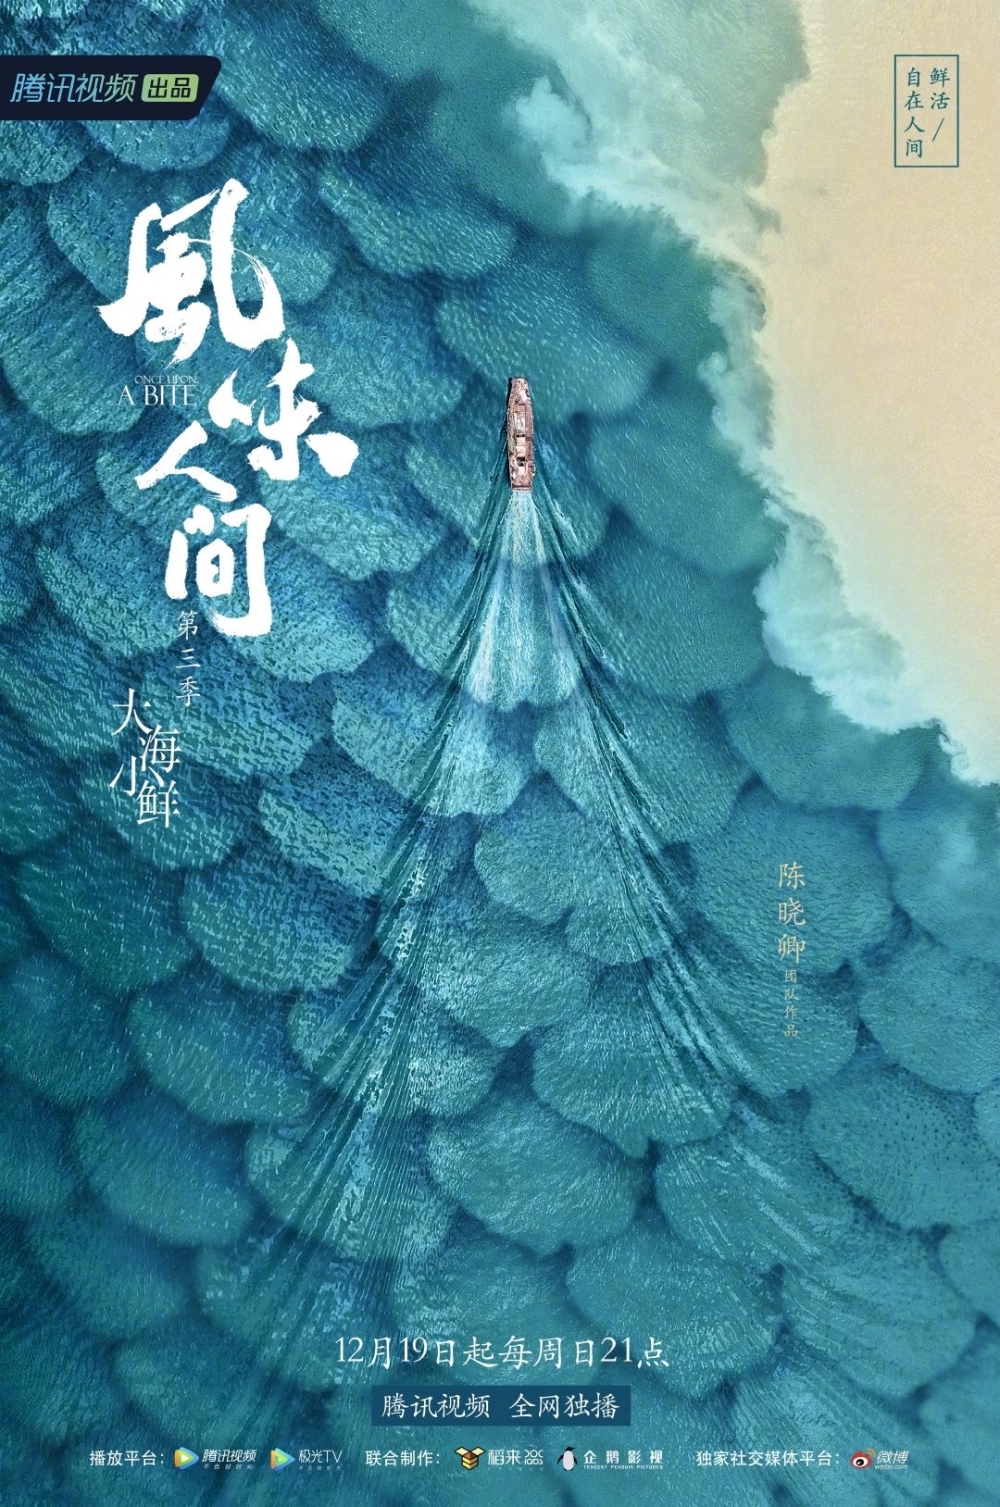 优设名人榜第1期中国电影海报设计第一人黄海